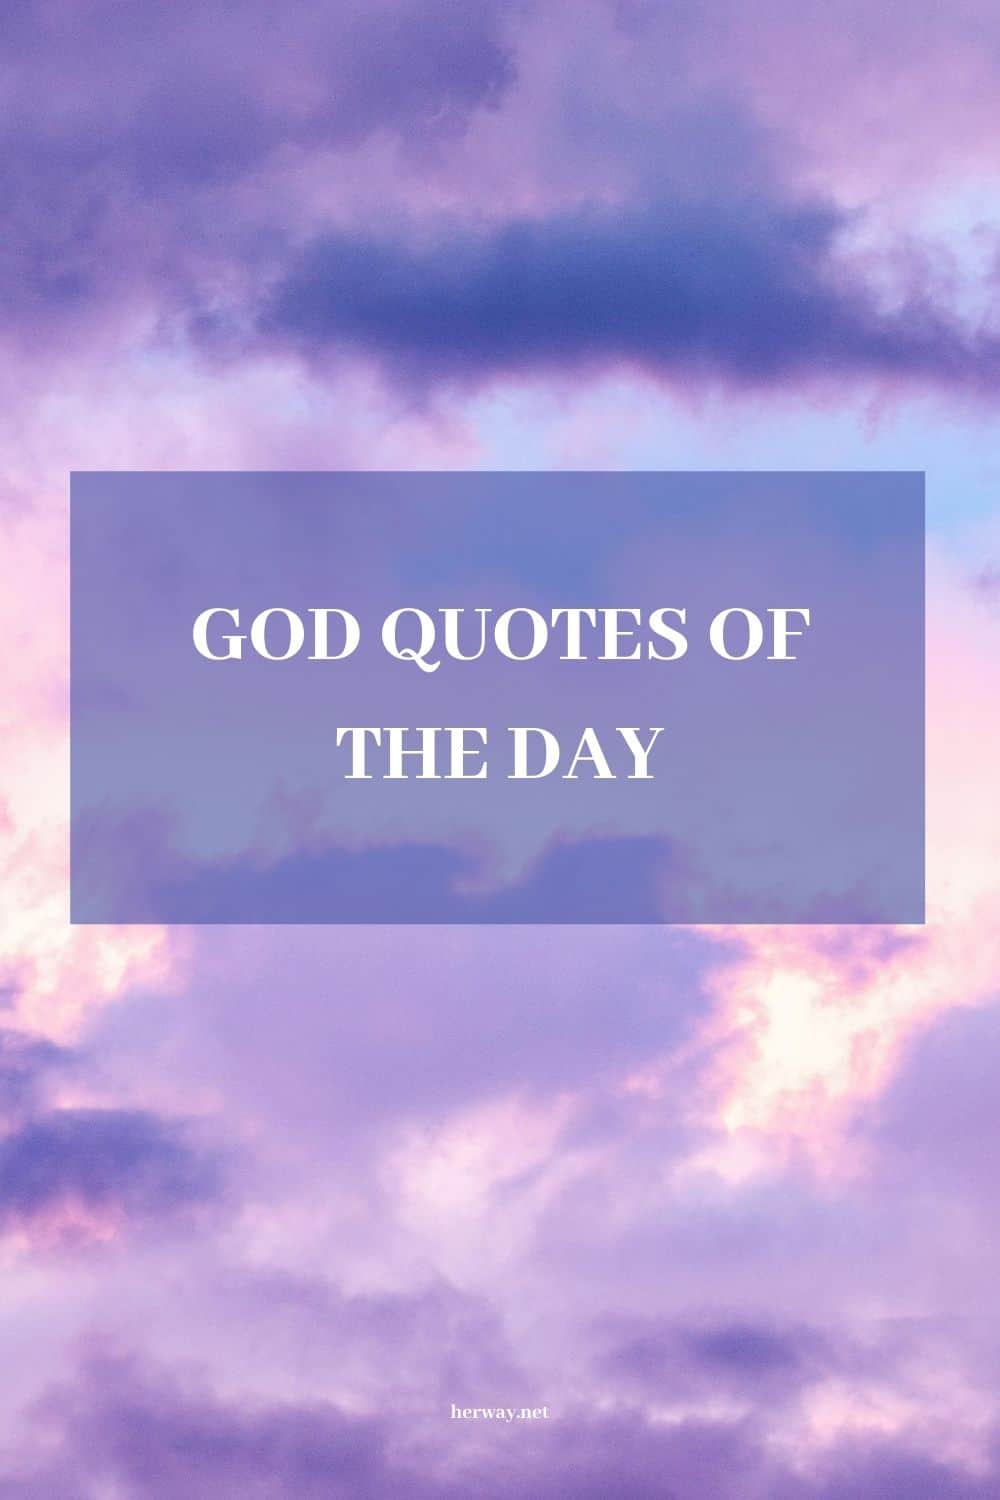 God Quotes Uplifting Sayings To Inspire And Empower You (Citações de Deus: frases edificantes para o inspirar e fortalecer)